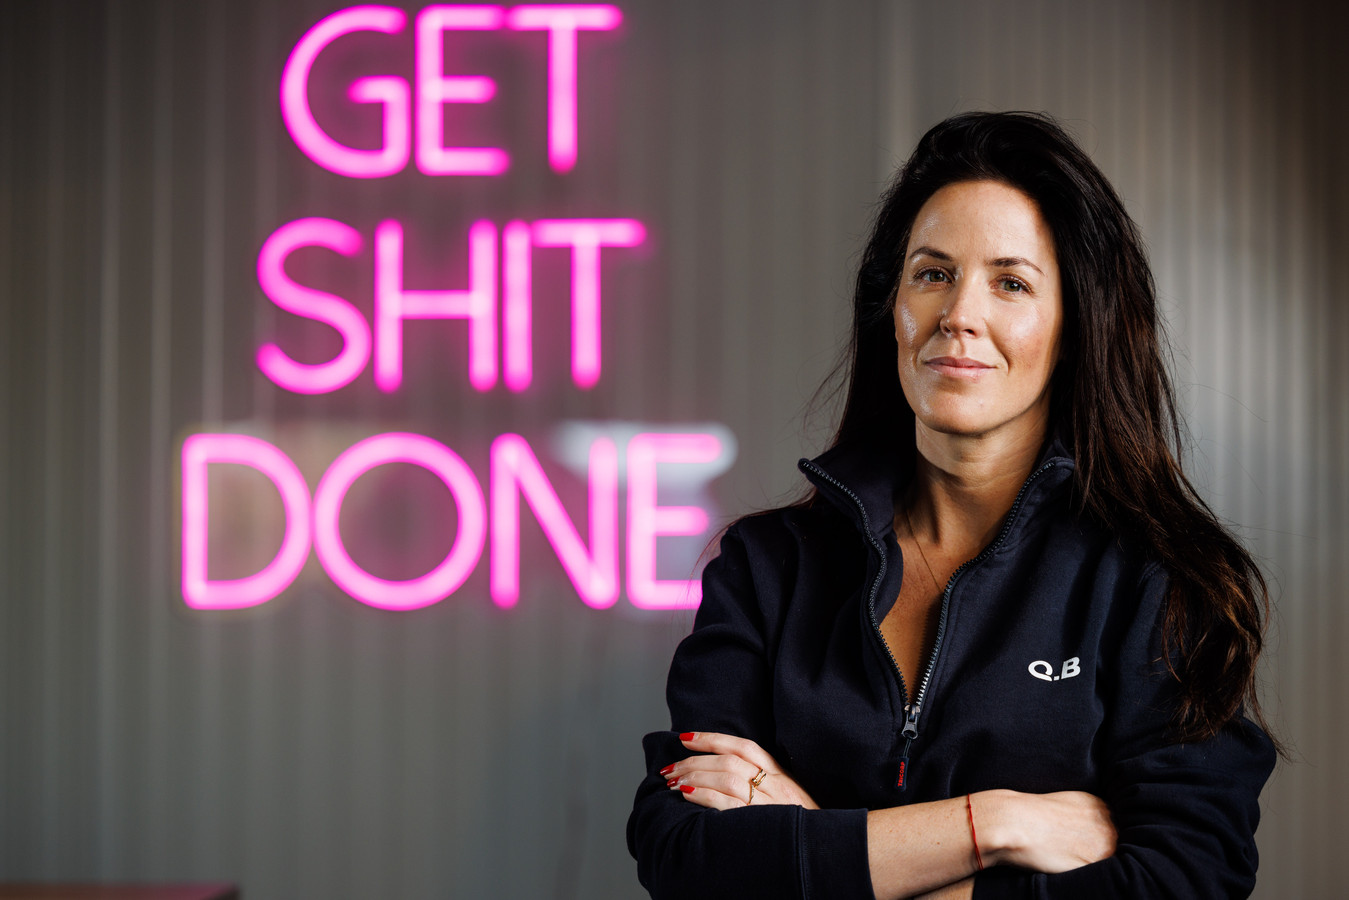 ‘Get shit done’:  het is van toepassing op Peggy Heessels, de eigenaresse van Qlean Business.